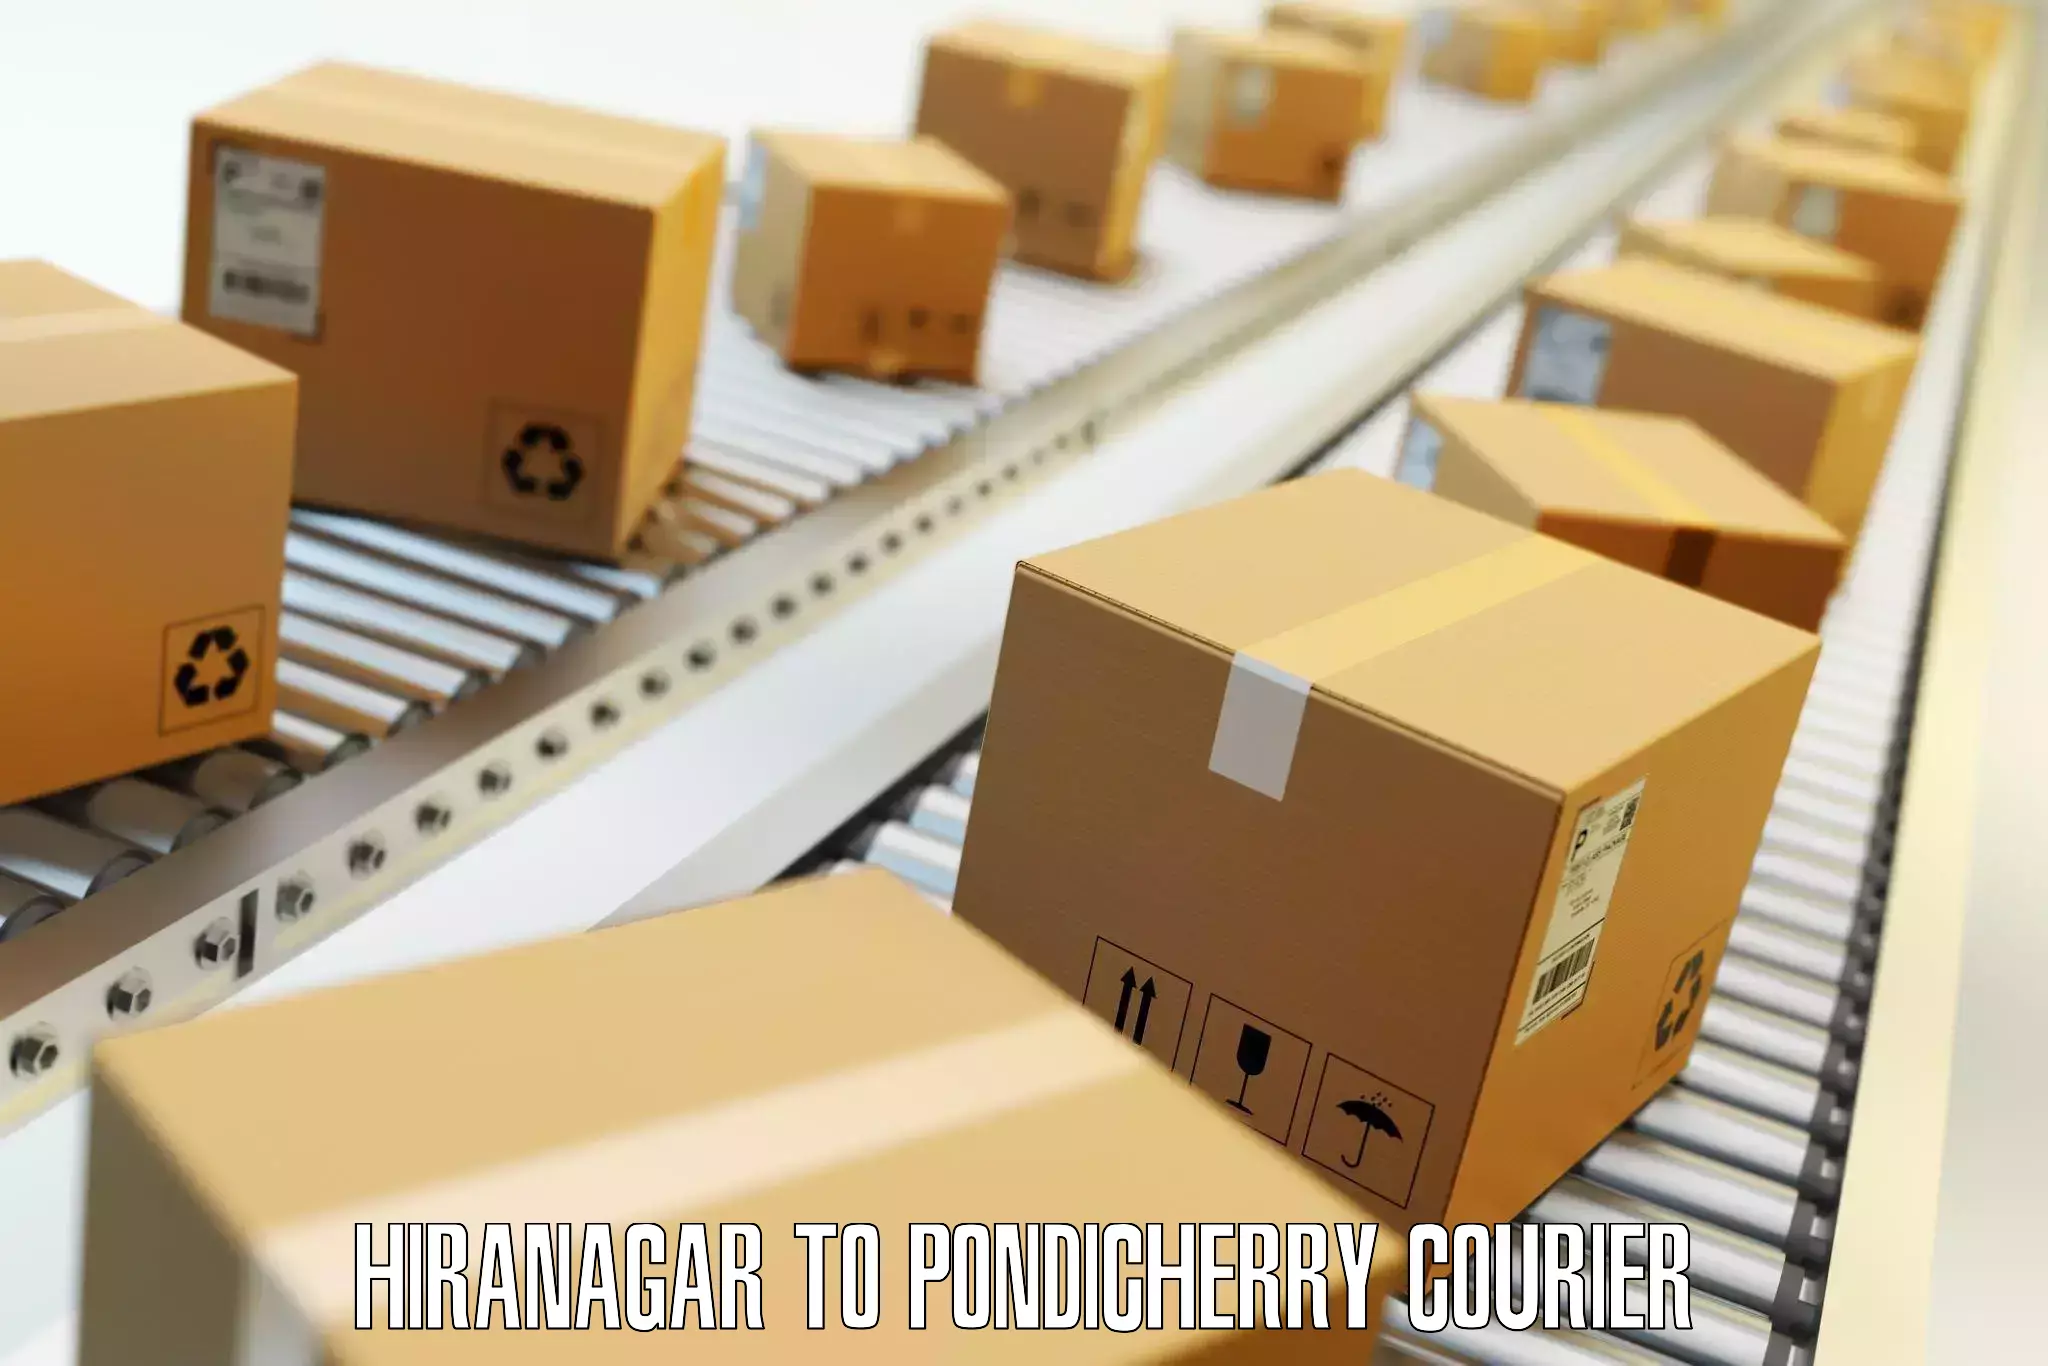 Flexible luggage courier service Hiranagar to Pondicherry